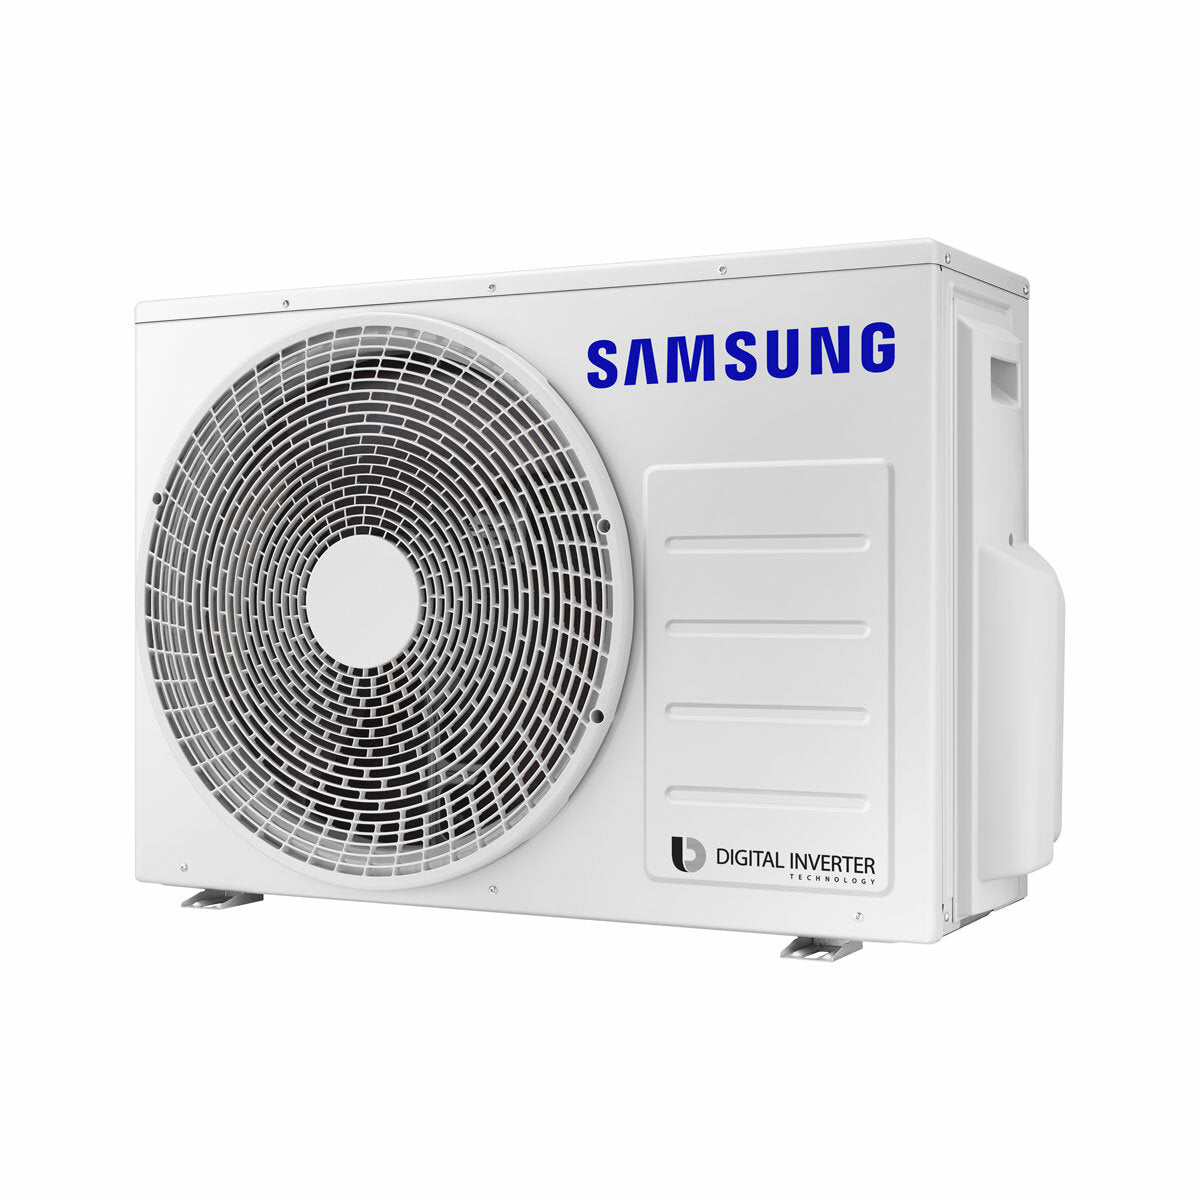 Samsung Cebu Wi-Fi Trial Split Klimaanlage 7000 + 7000 + 7000 BTU Wechselrichter A++ WLAN Außengerät 5,2 kW